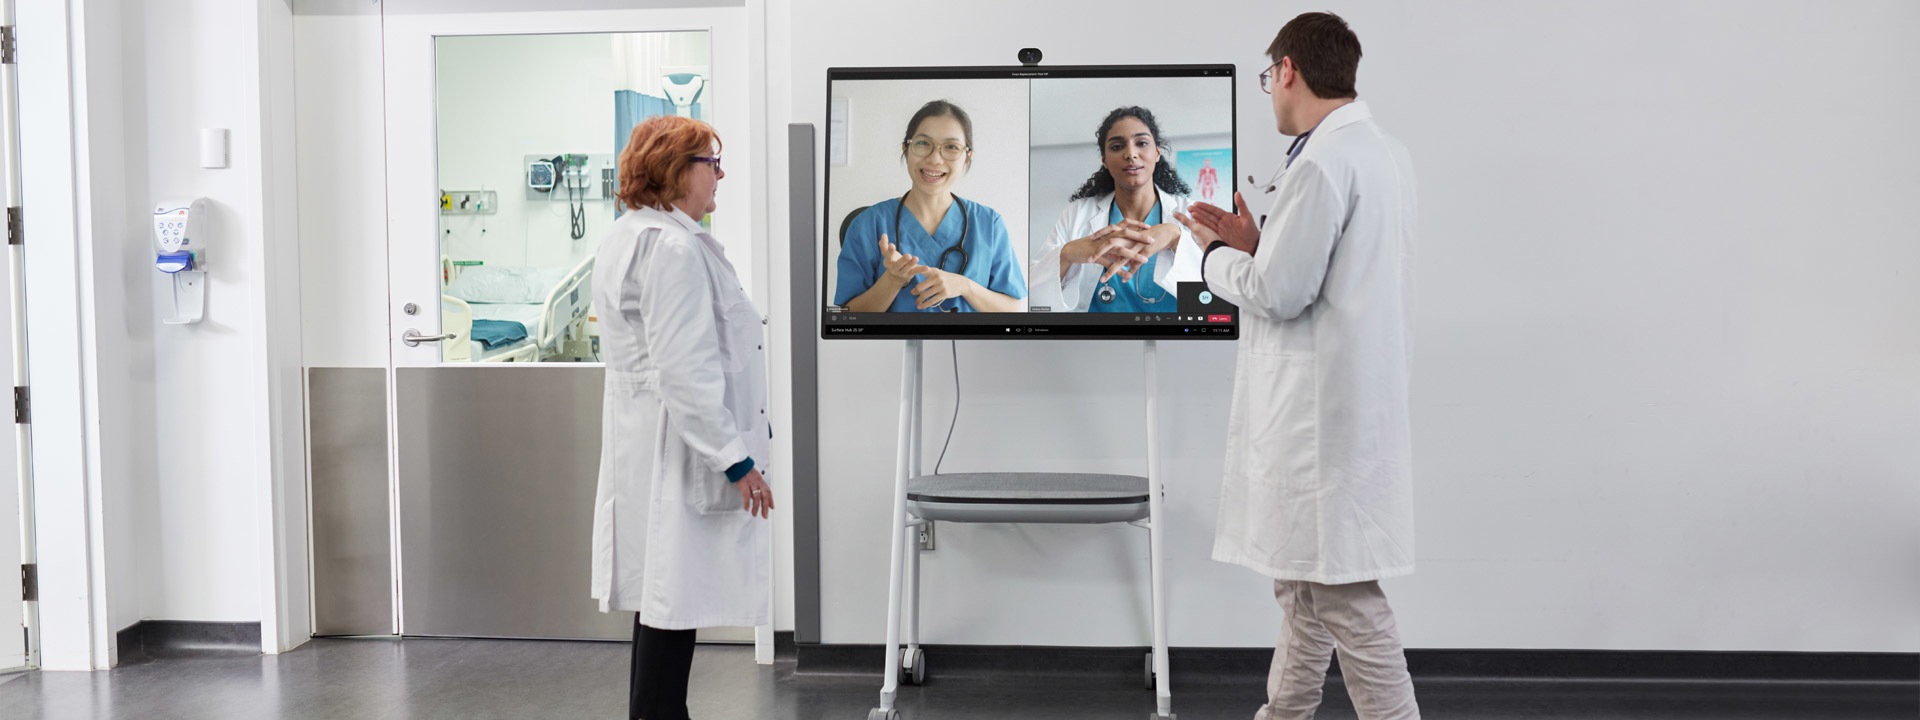 在医疗环境中，两名医疗专业人员正在参与 Teams 视频通话